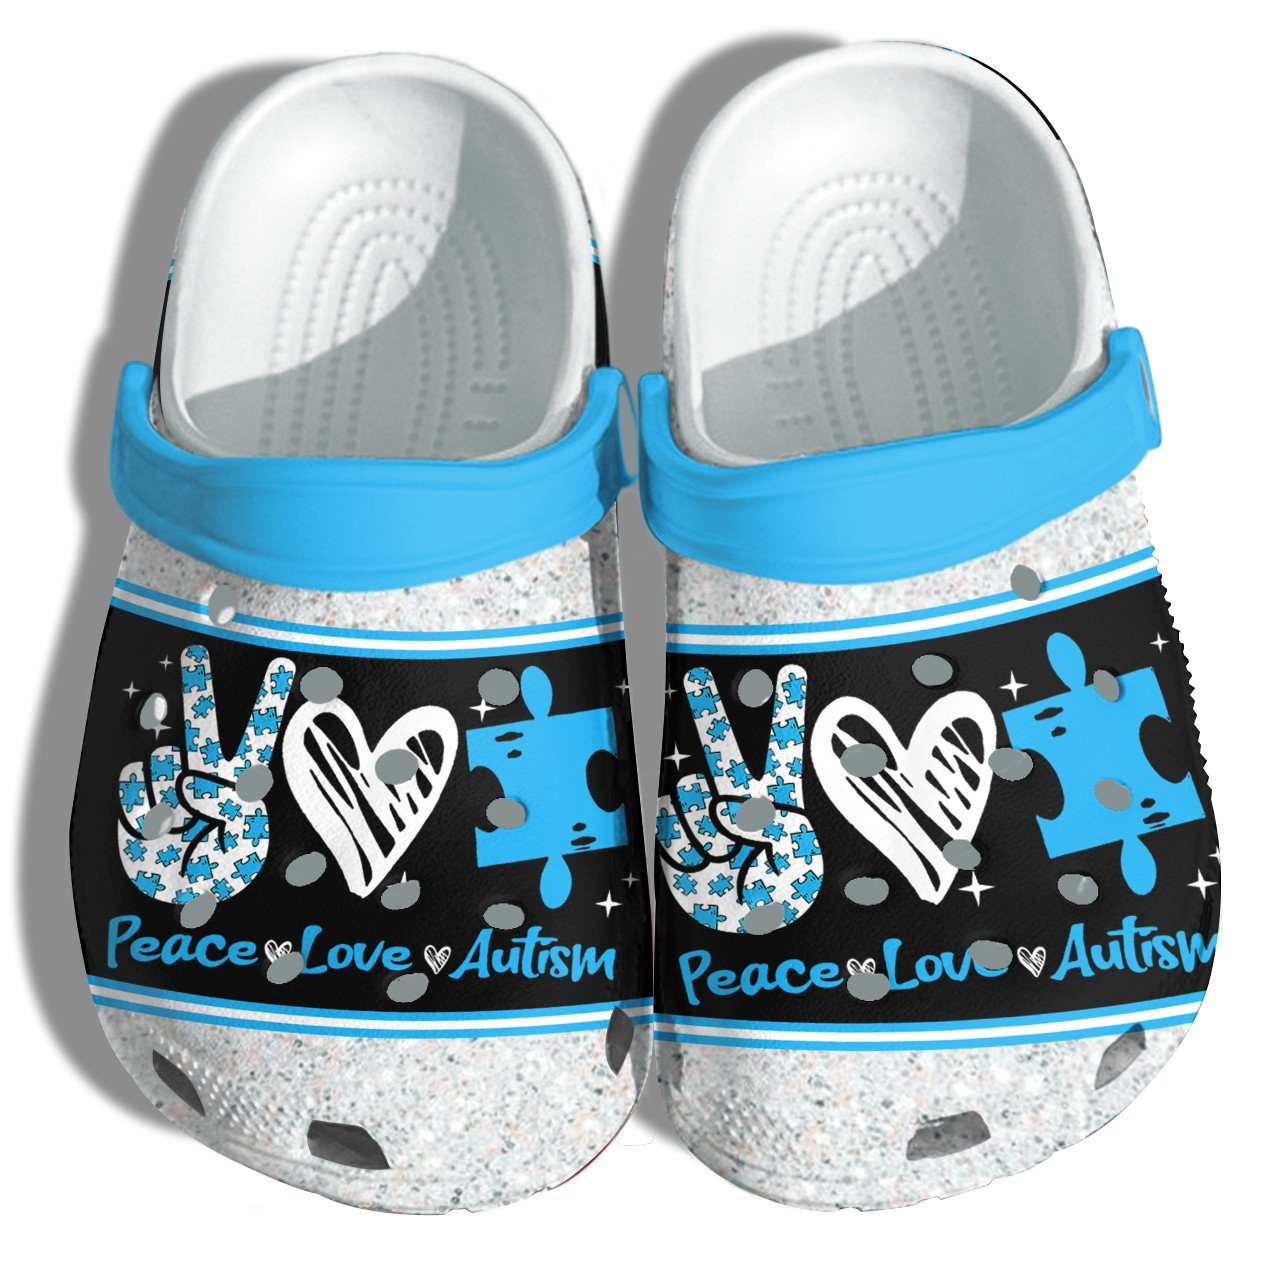 Peace Love Autism Puzzel Crocs Shoes - April Wear Blue Autism Awareness Shoes Croc Clogs Gifts Son Daughter